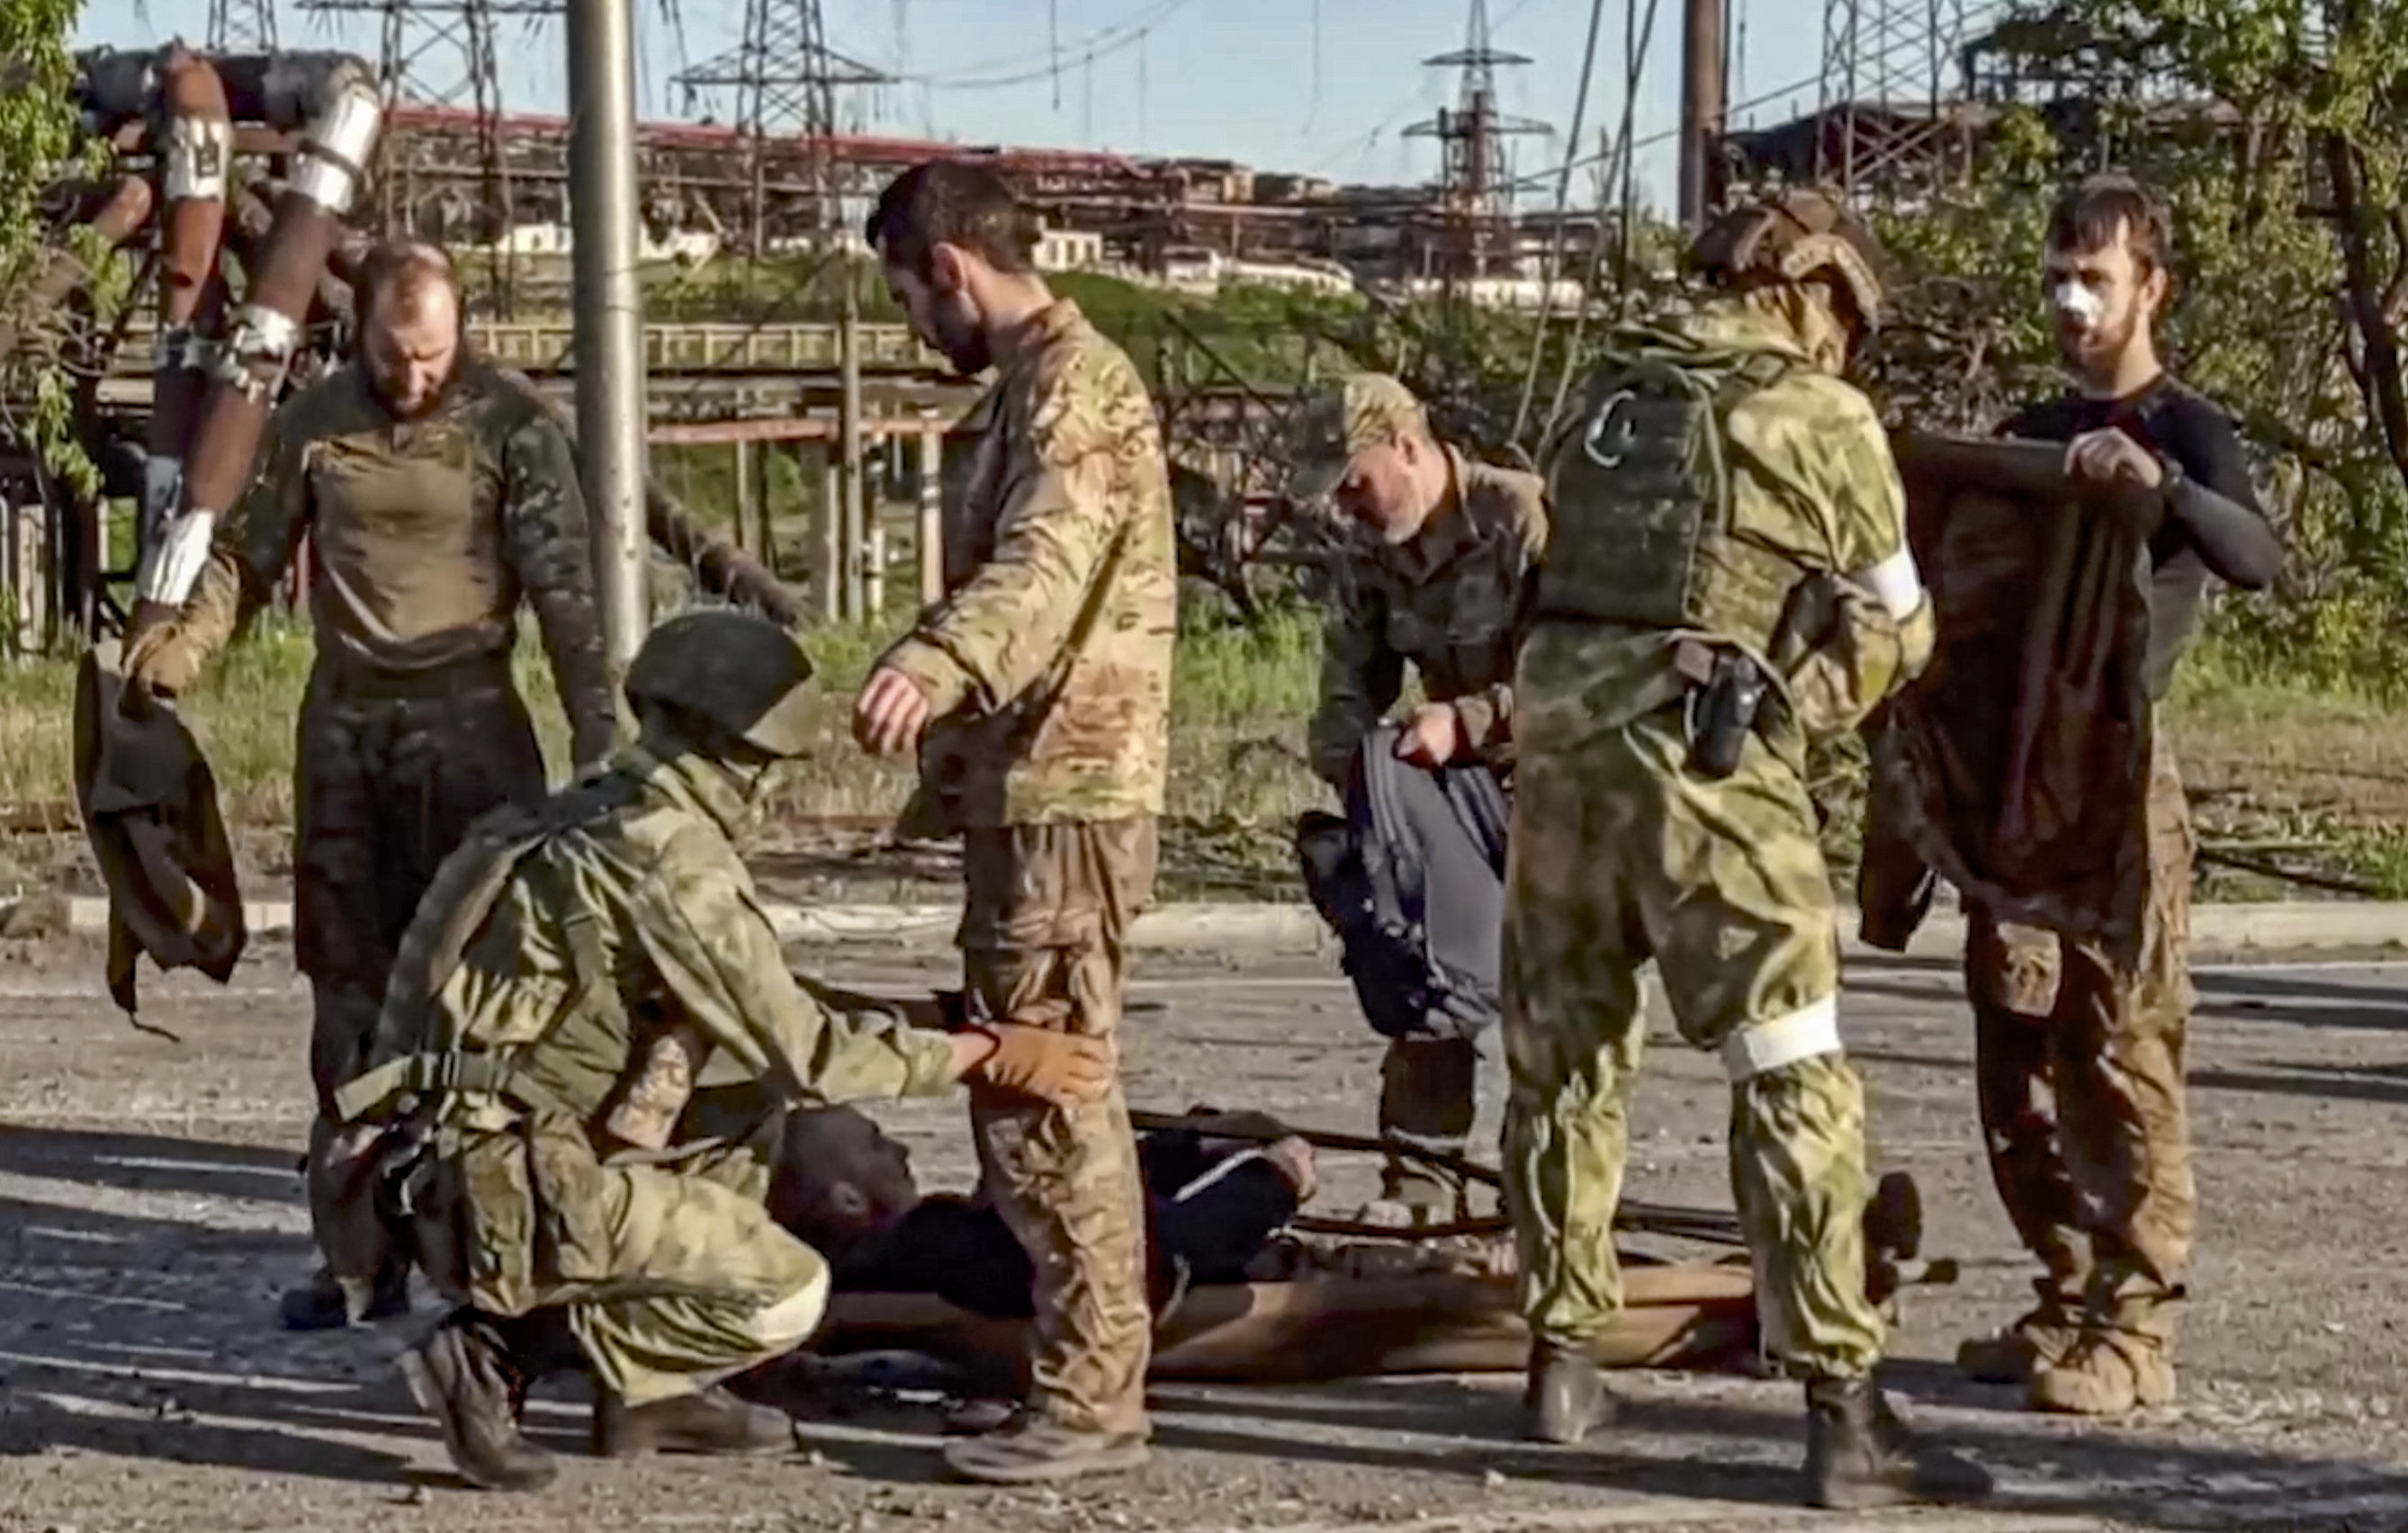 Посмотря вперед пятеро солдат. Пленные азовцы в Мариуполе. Сдавшиеся в плен украинские военные в Мариуполе.